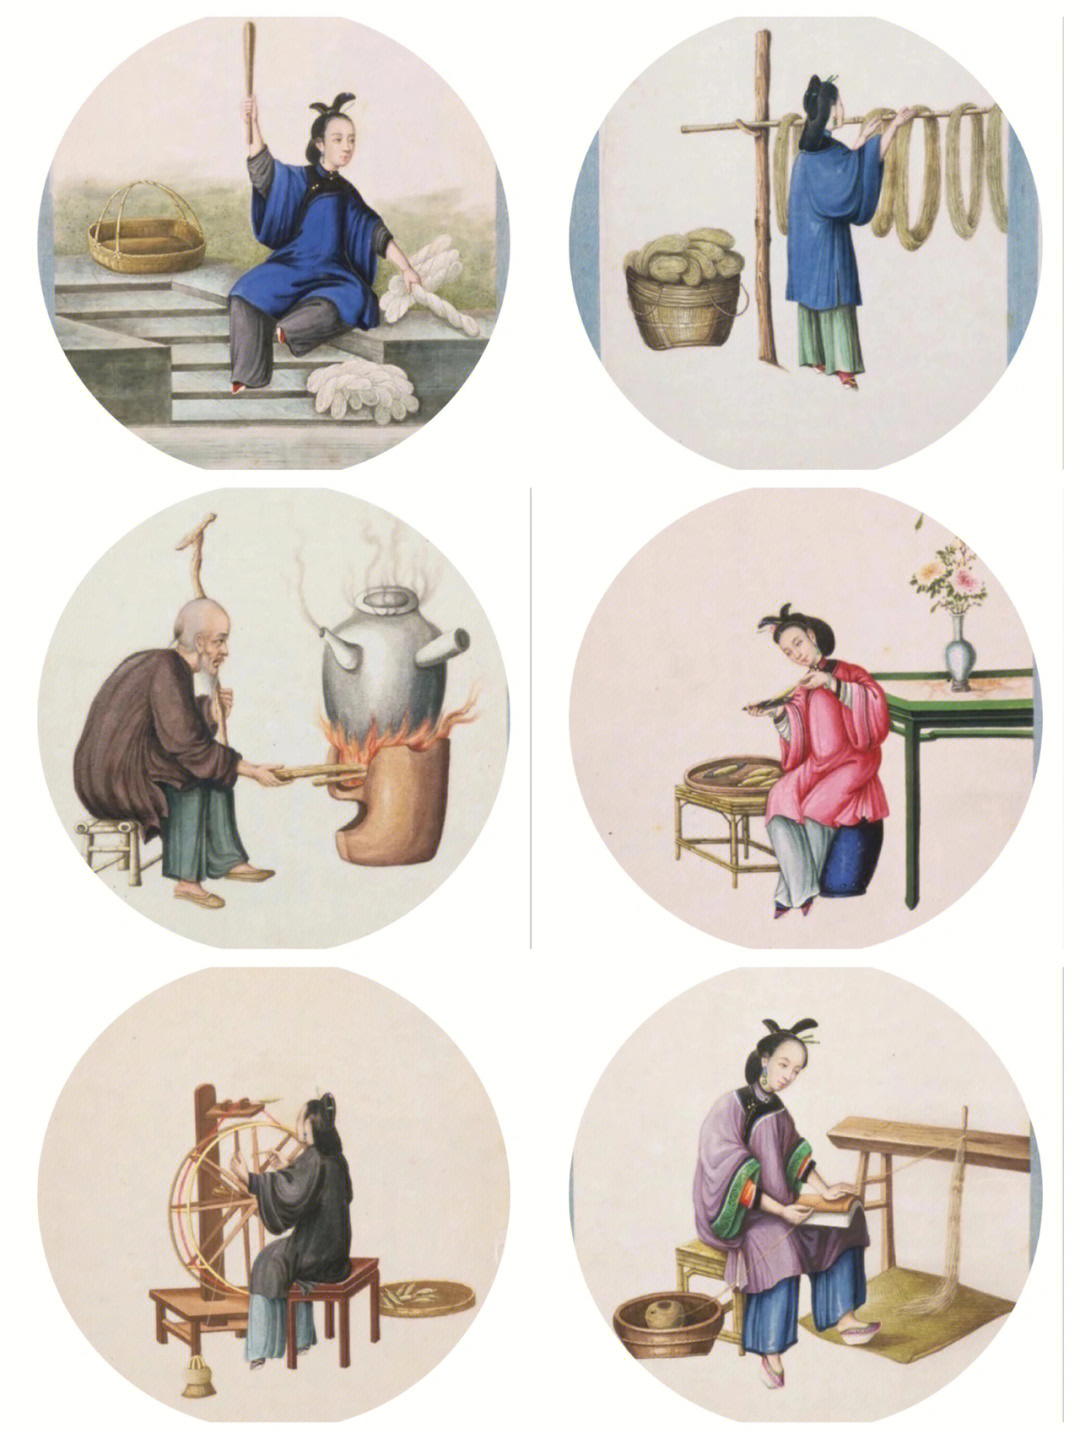 古人织布的过程图片图片